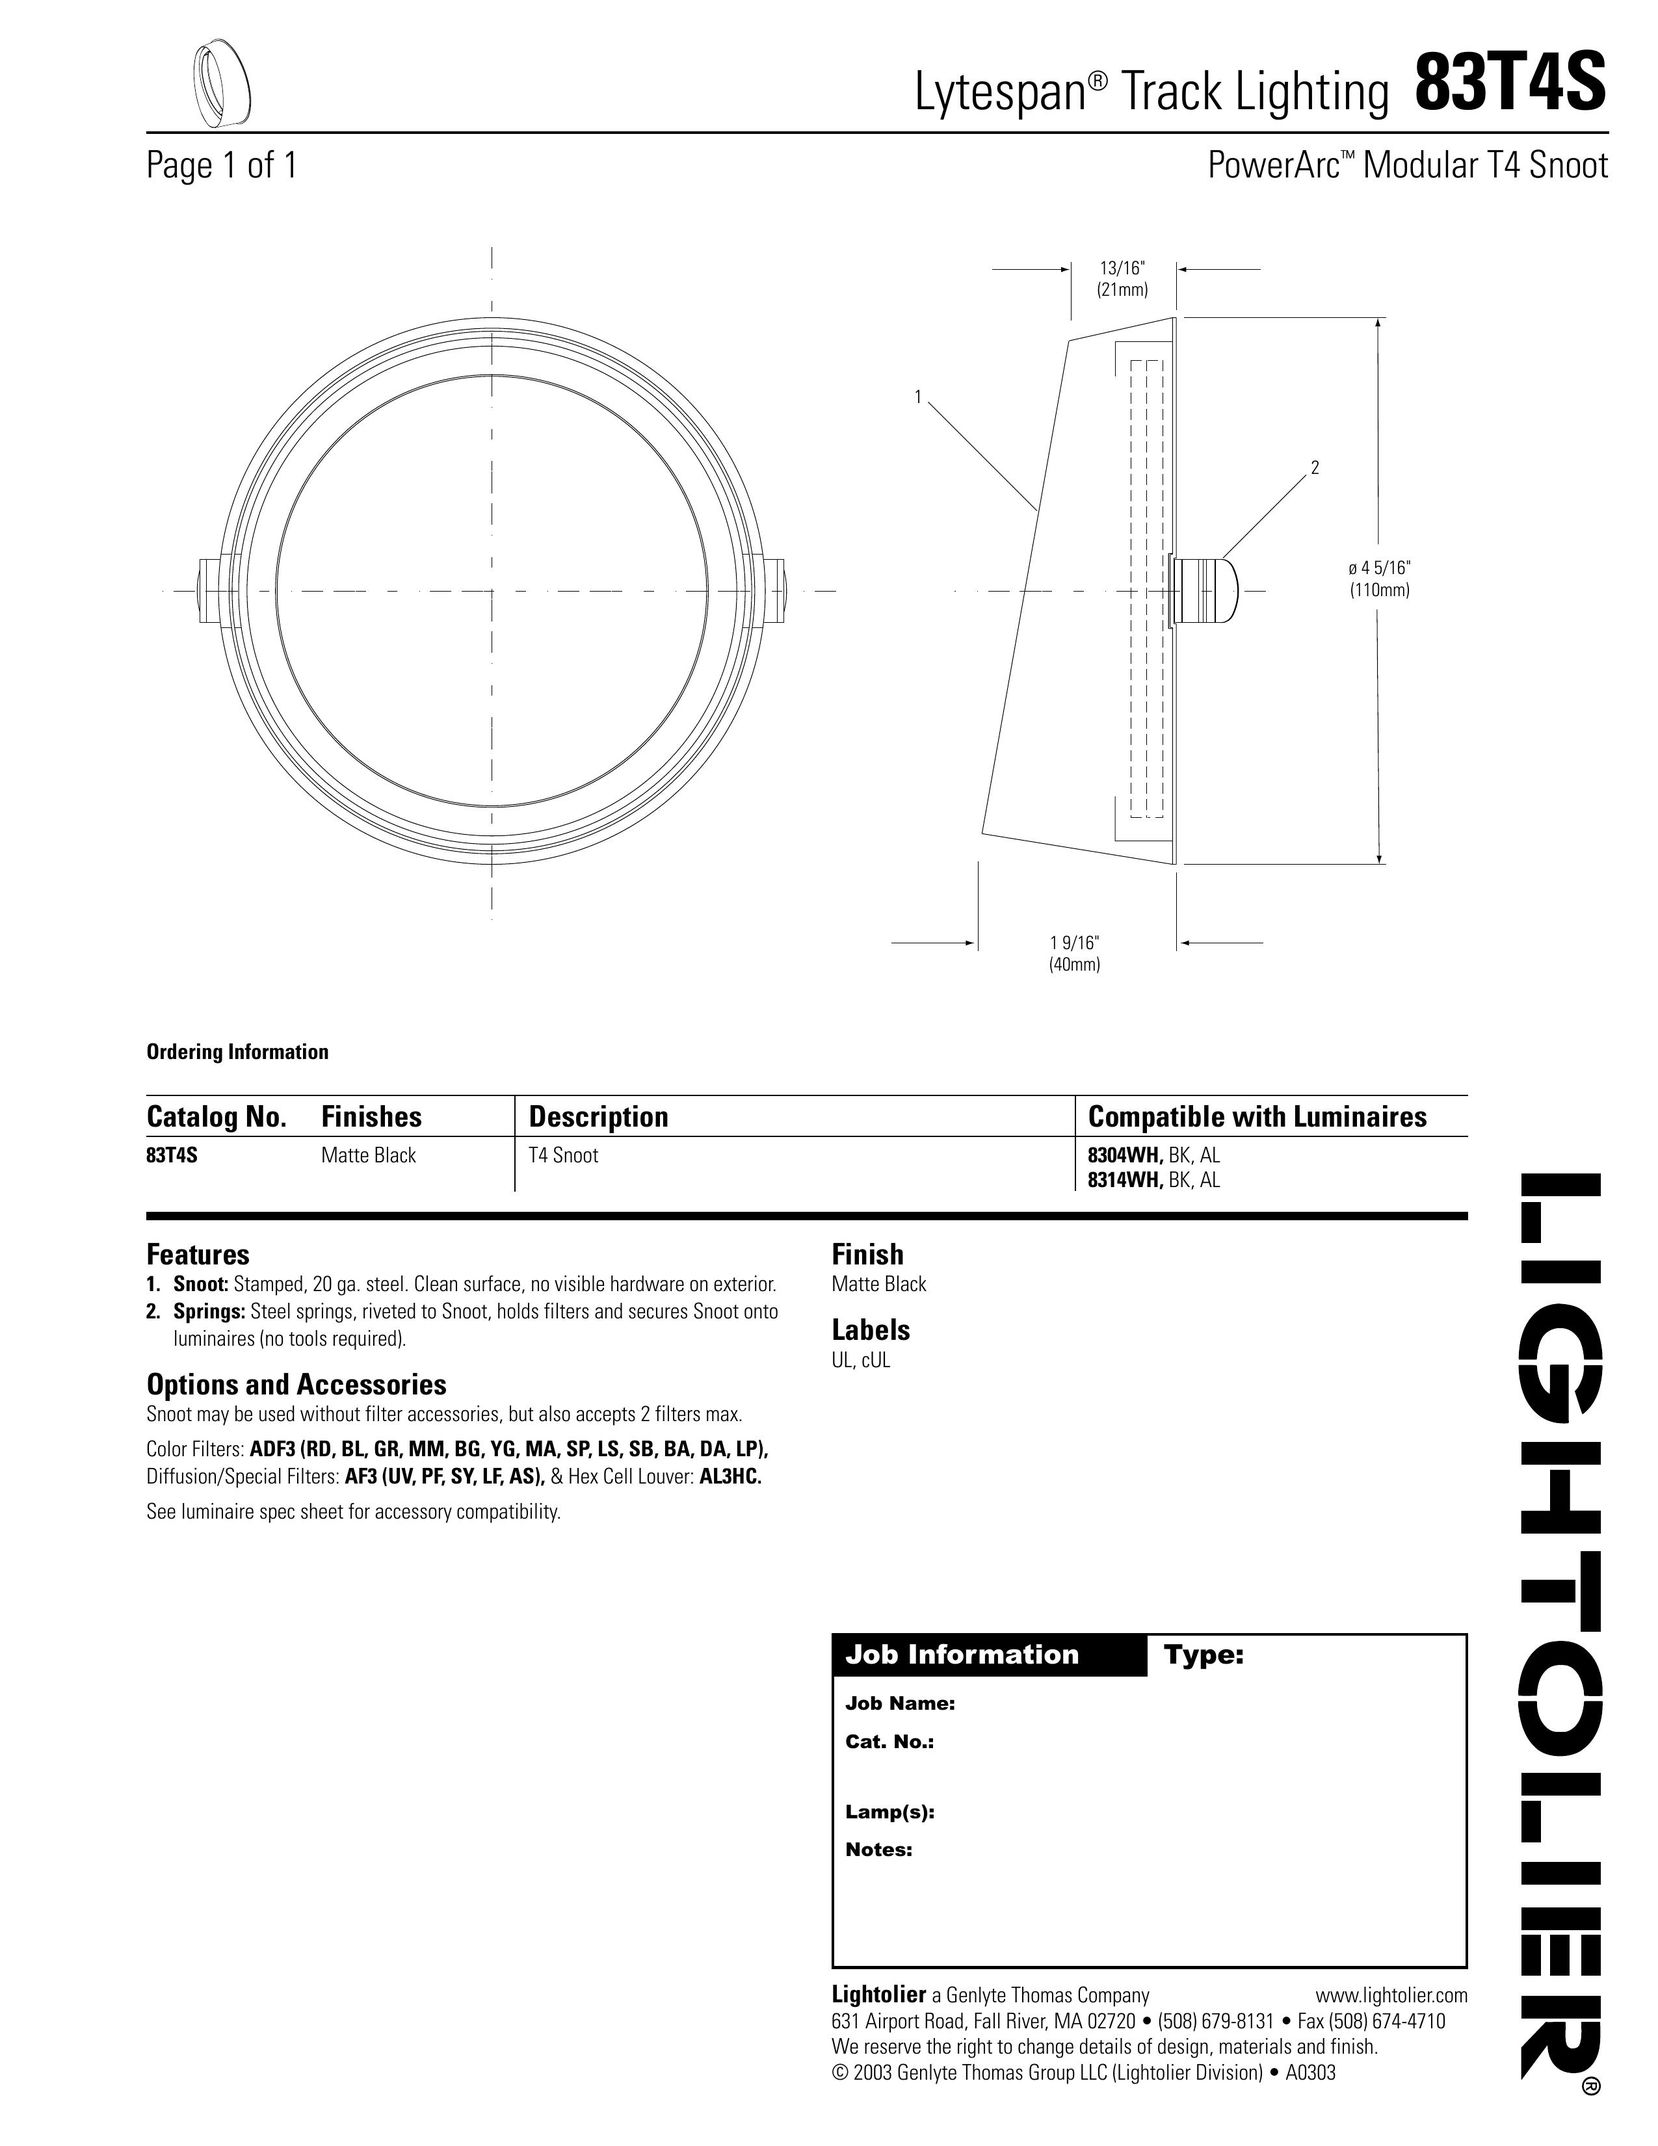 Lightolier 83T4S Work Light User Manual